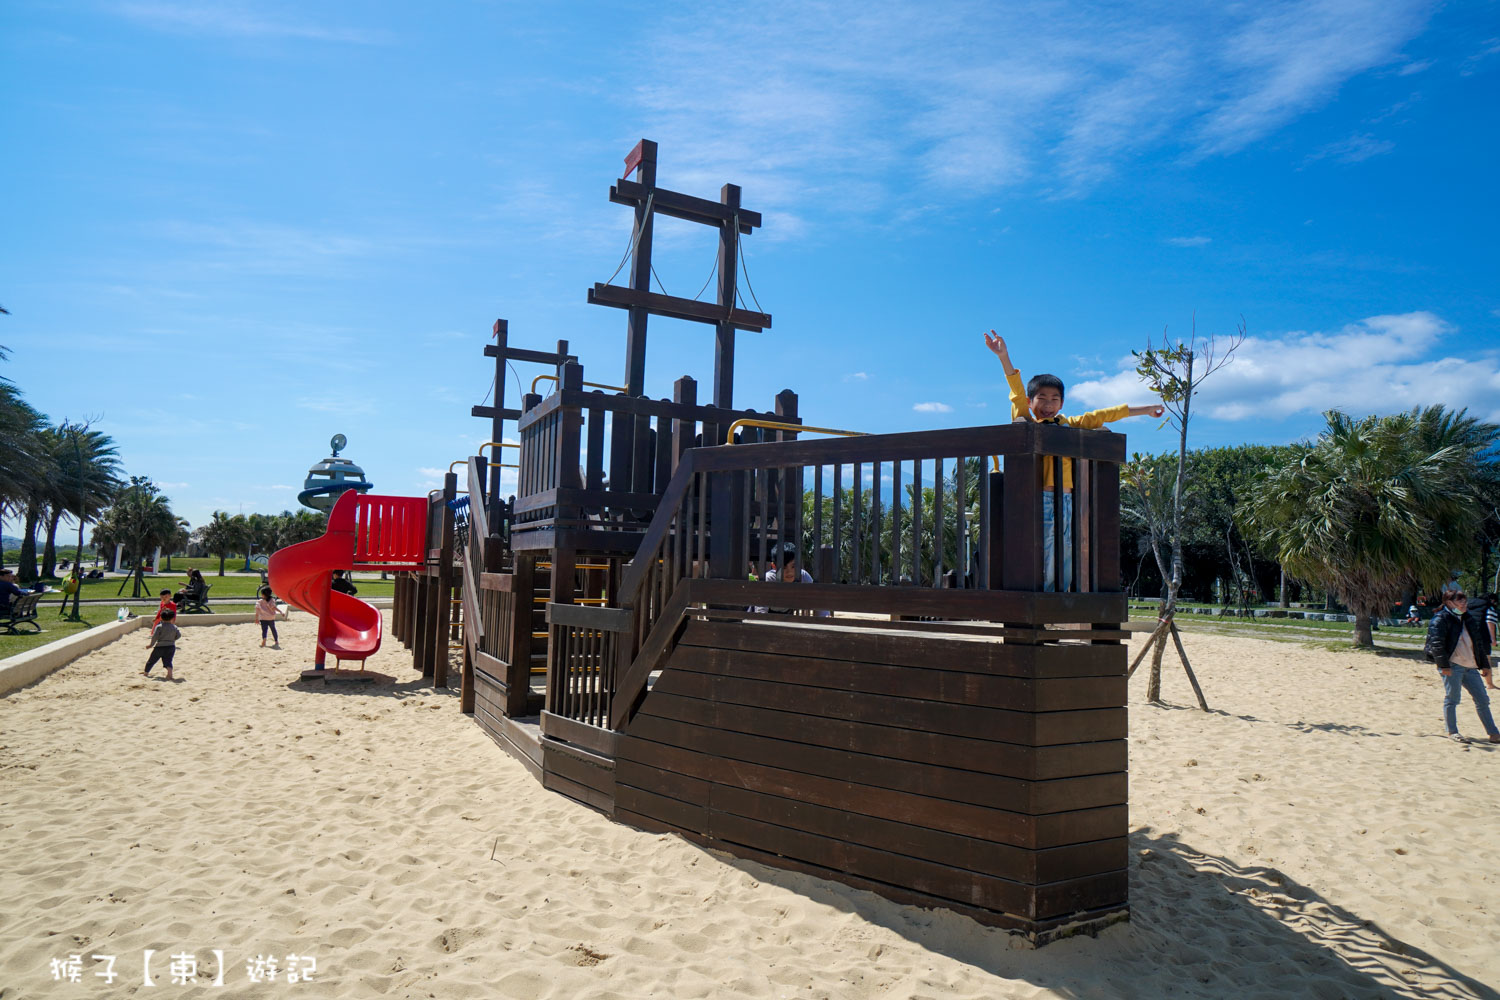 延伸閱讀：[花蓮] 太平洋公園南濱段 免費景點超好玩 海邊超大沙坑 海盜船放電小孩 這裡真的不是沖繩